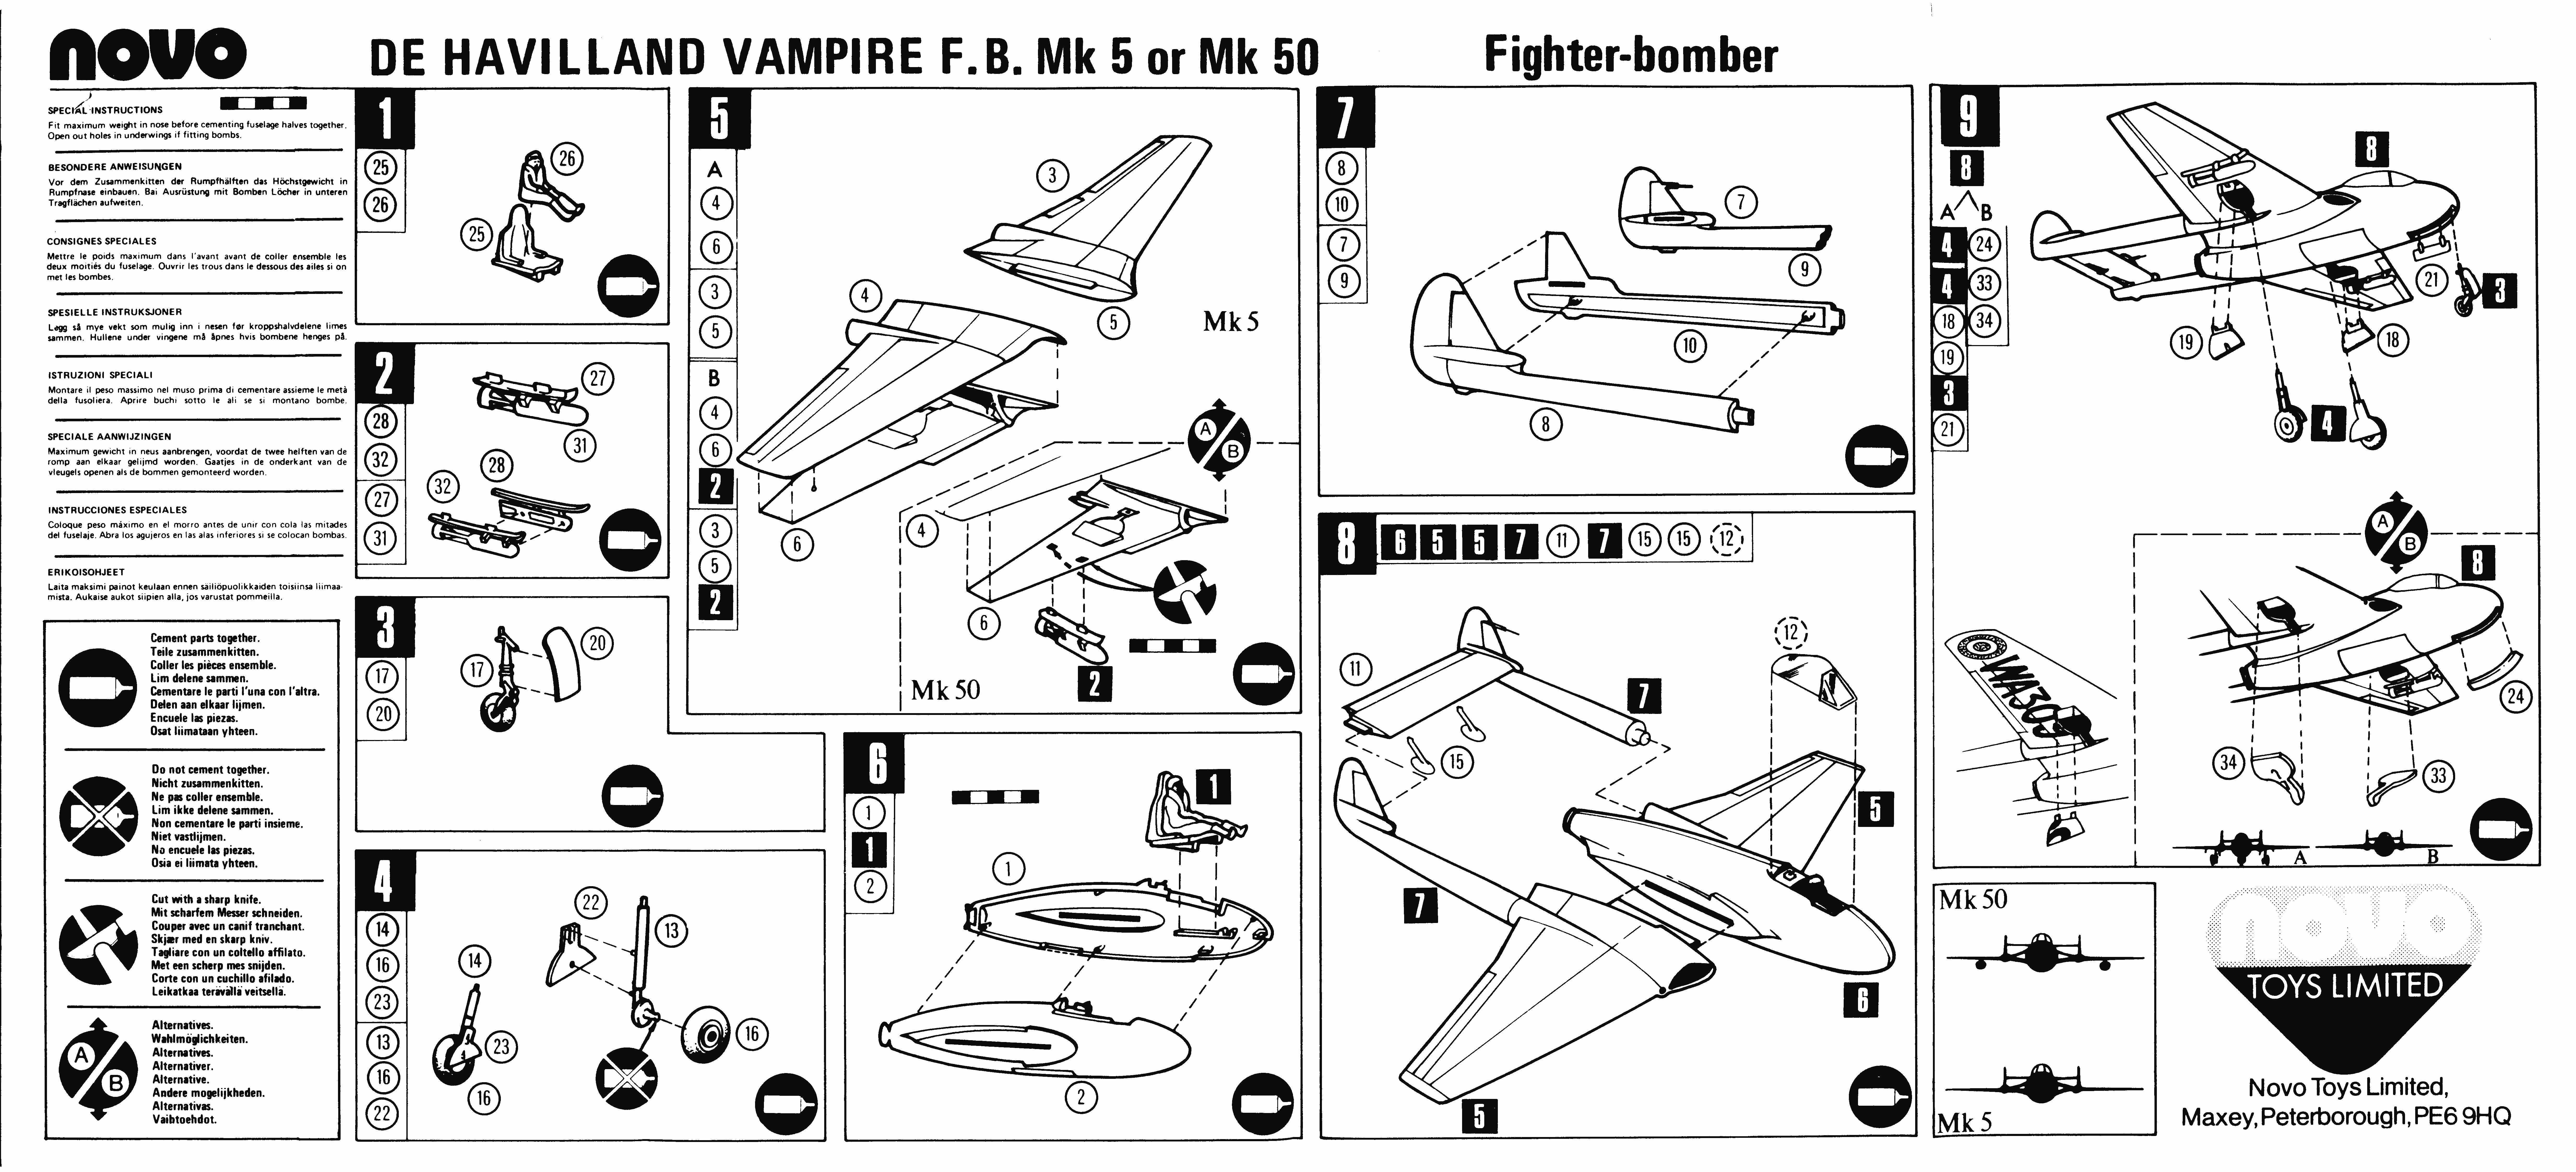 Инструкция по сборке NOVO F217 D.H. Vampire, NOVO Toys Ltd, Cat.No.78052, 1979